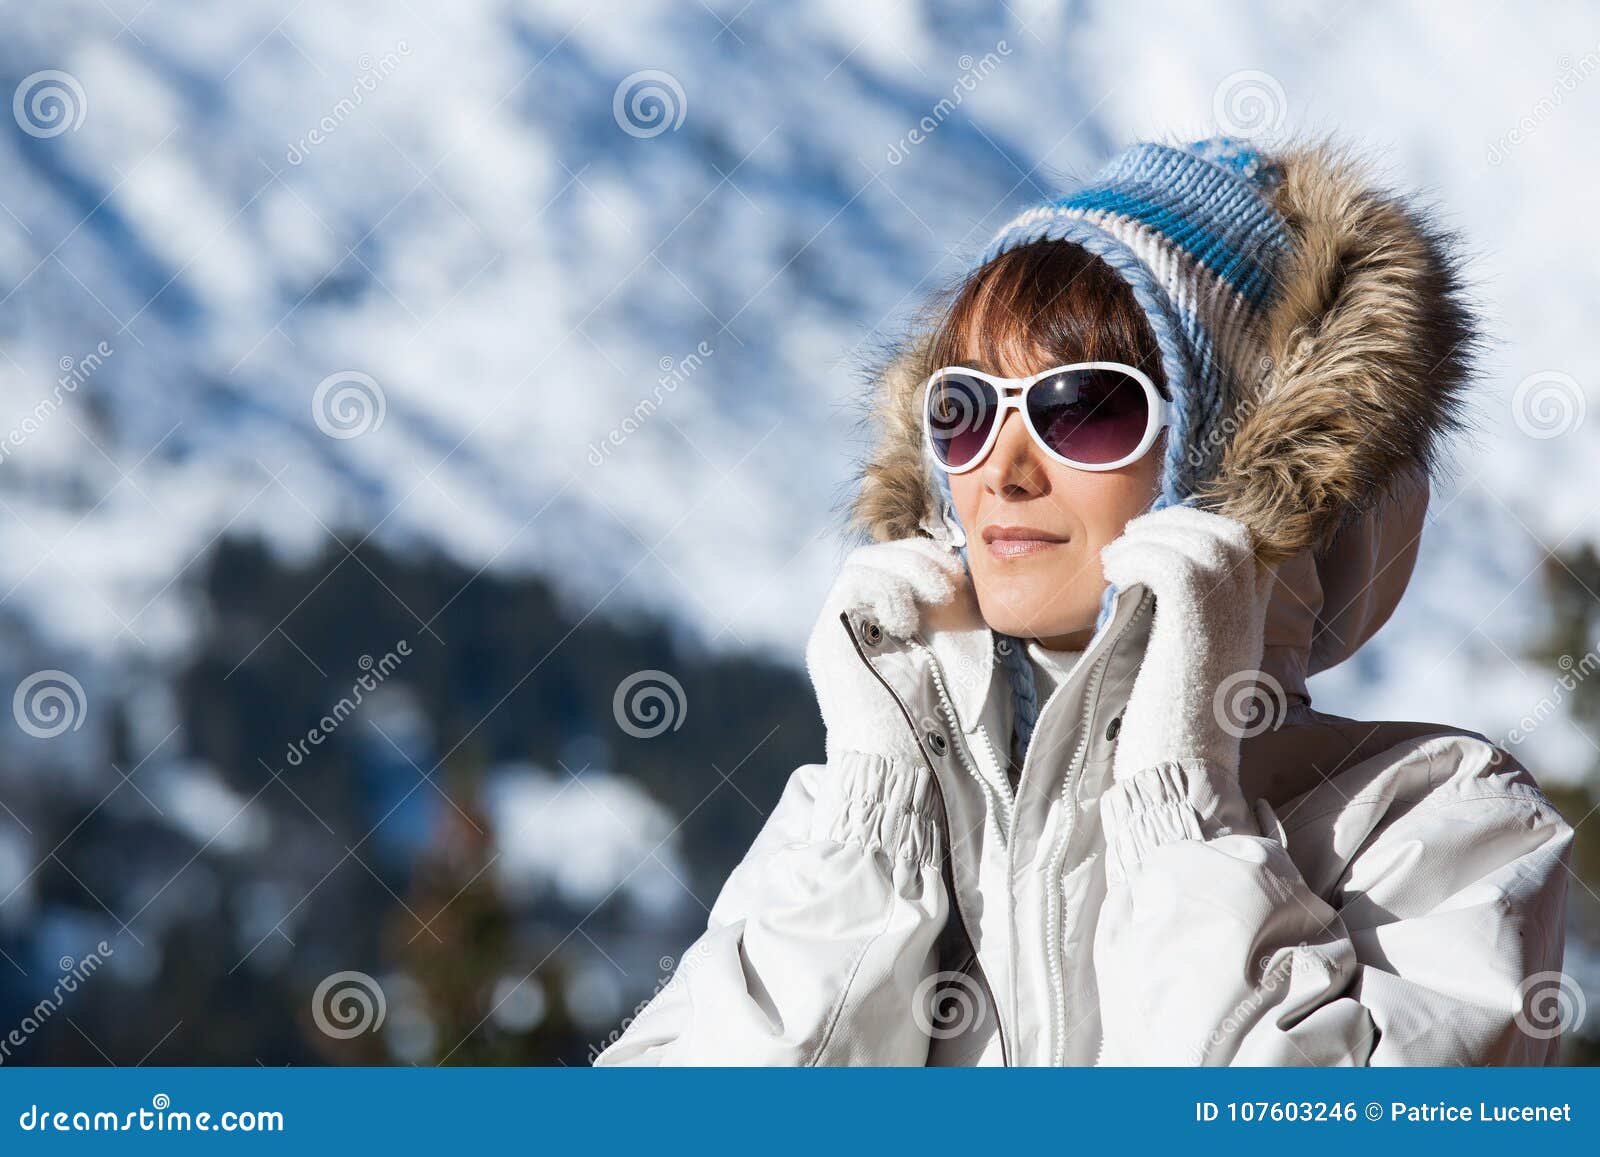 Mujer joven con gafas de sol y una copa de vino llena de nieve